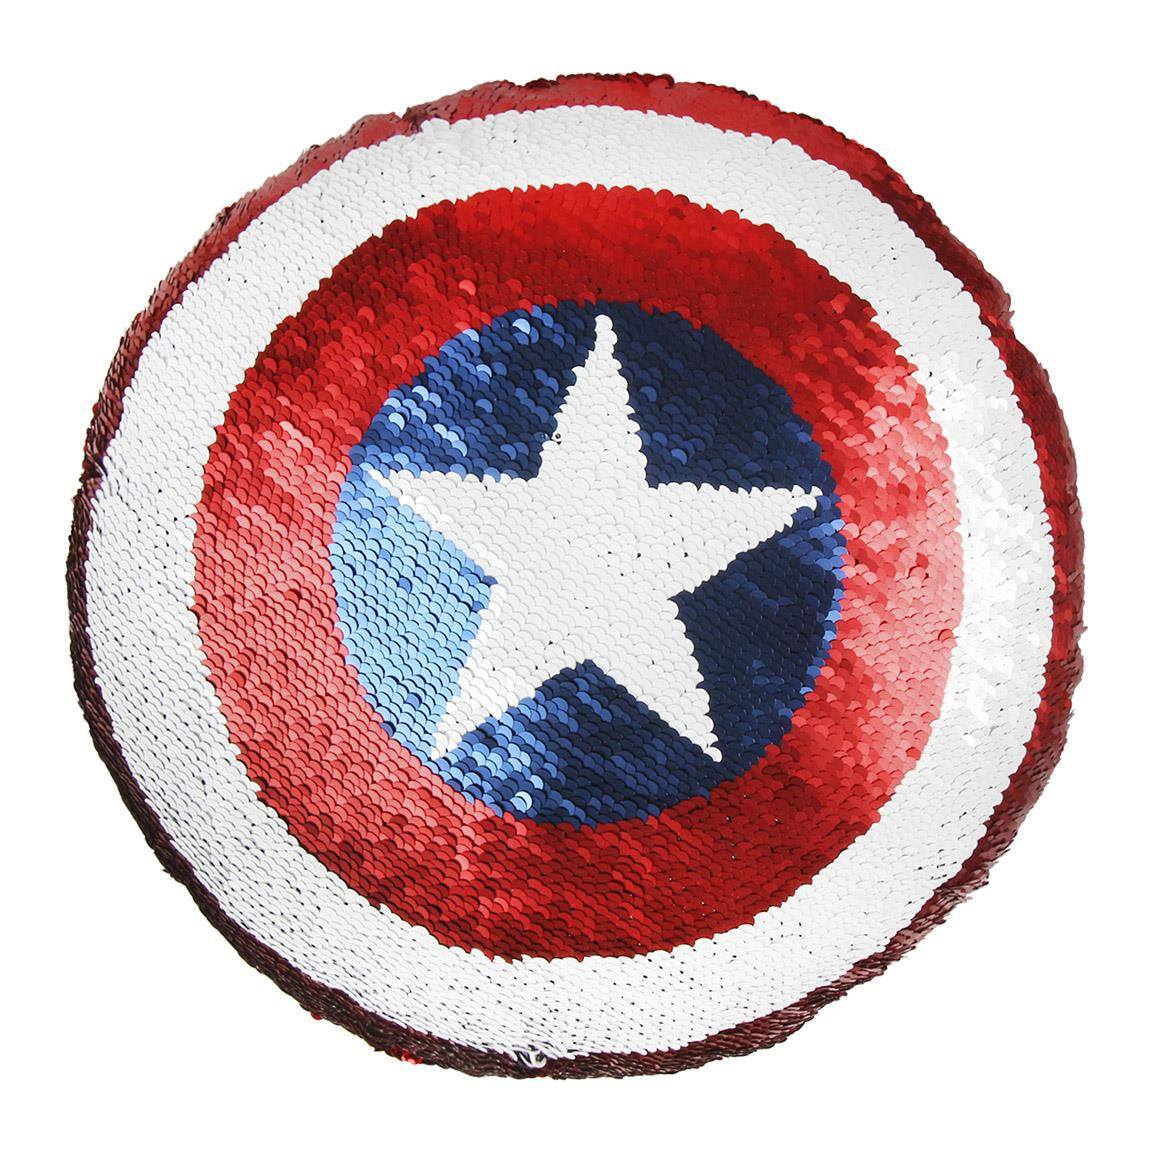 Avengers coussin paillettes Captain America 30 x 30 cm